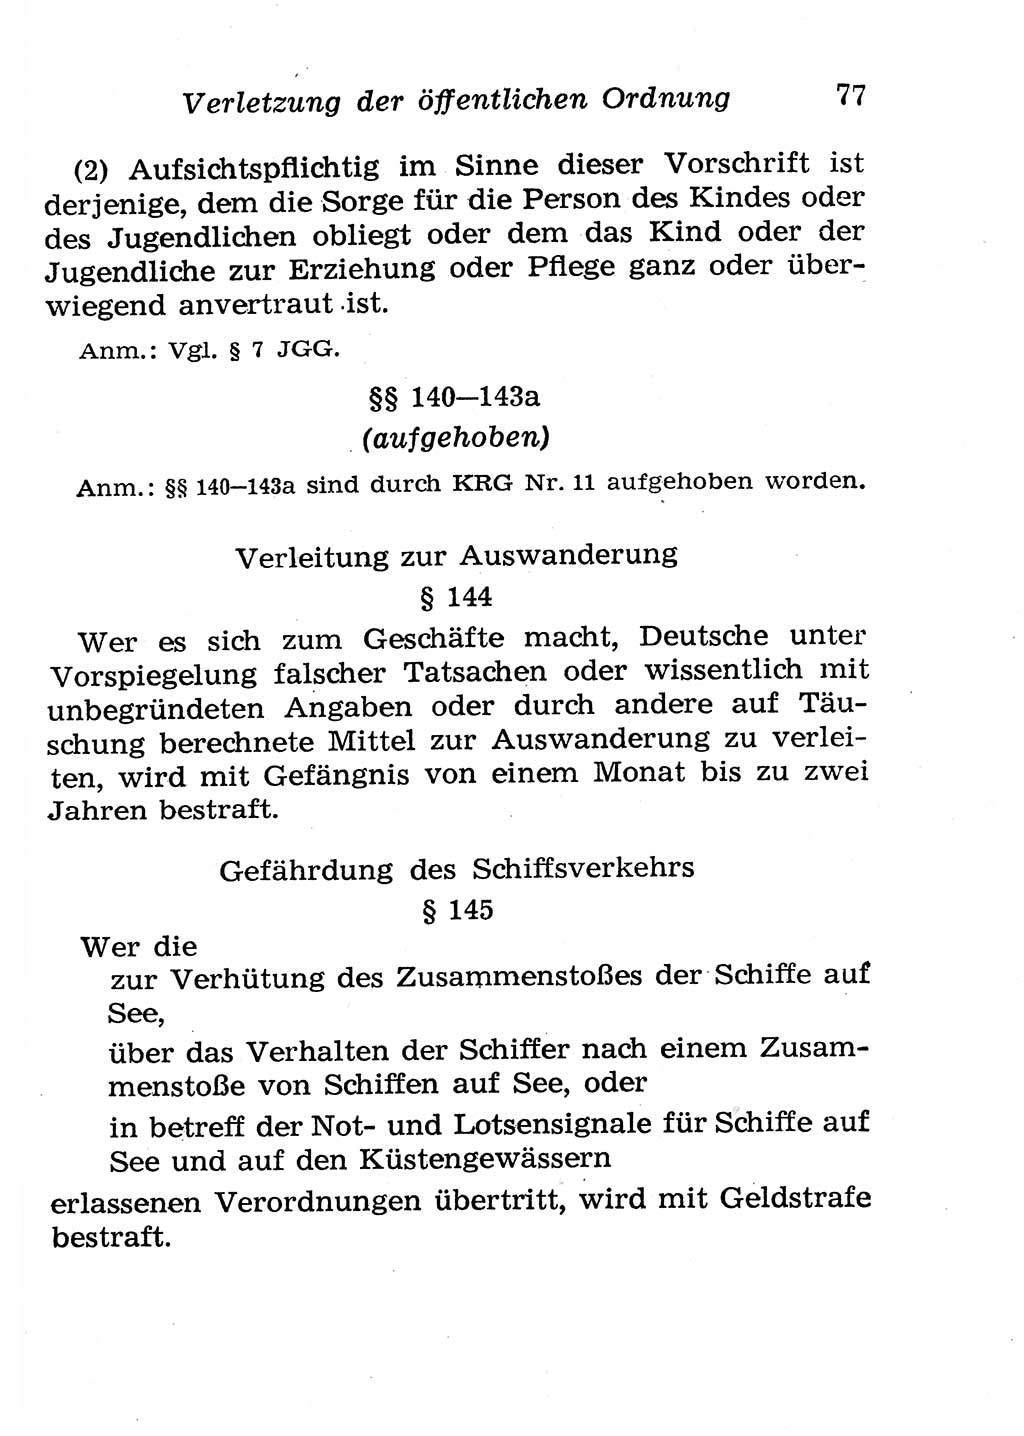 Strafgesetzbuch (StGB) und andere Strafgesetze [Deutsche Demokratische Republik (DDR)] 1958, Seite 77 (StGB Strafges. DDR 1958, S. 77)